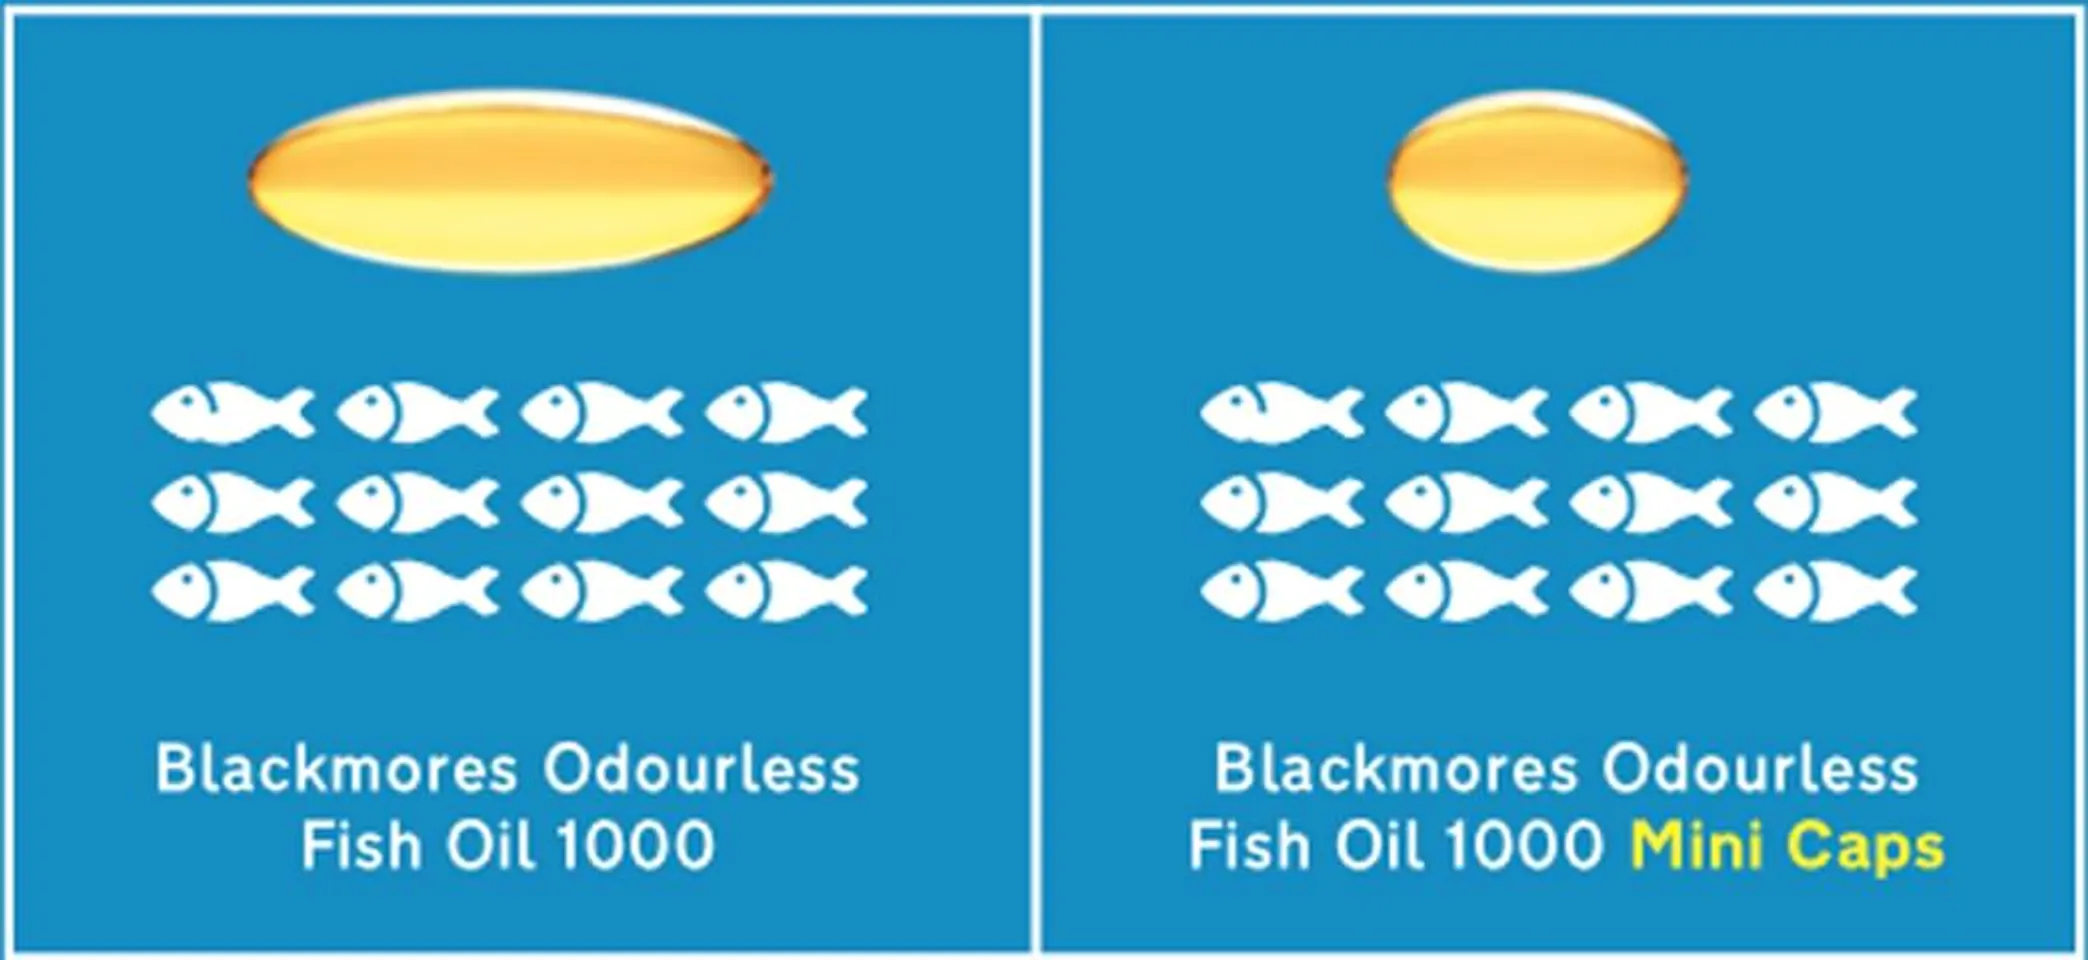 Trong 1 viên dầu cá Fish Oil Blackmores Mini có chứa tổng cộng 300mg DHA và EPA